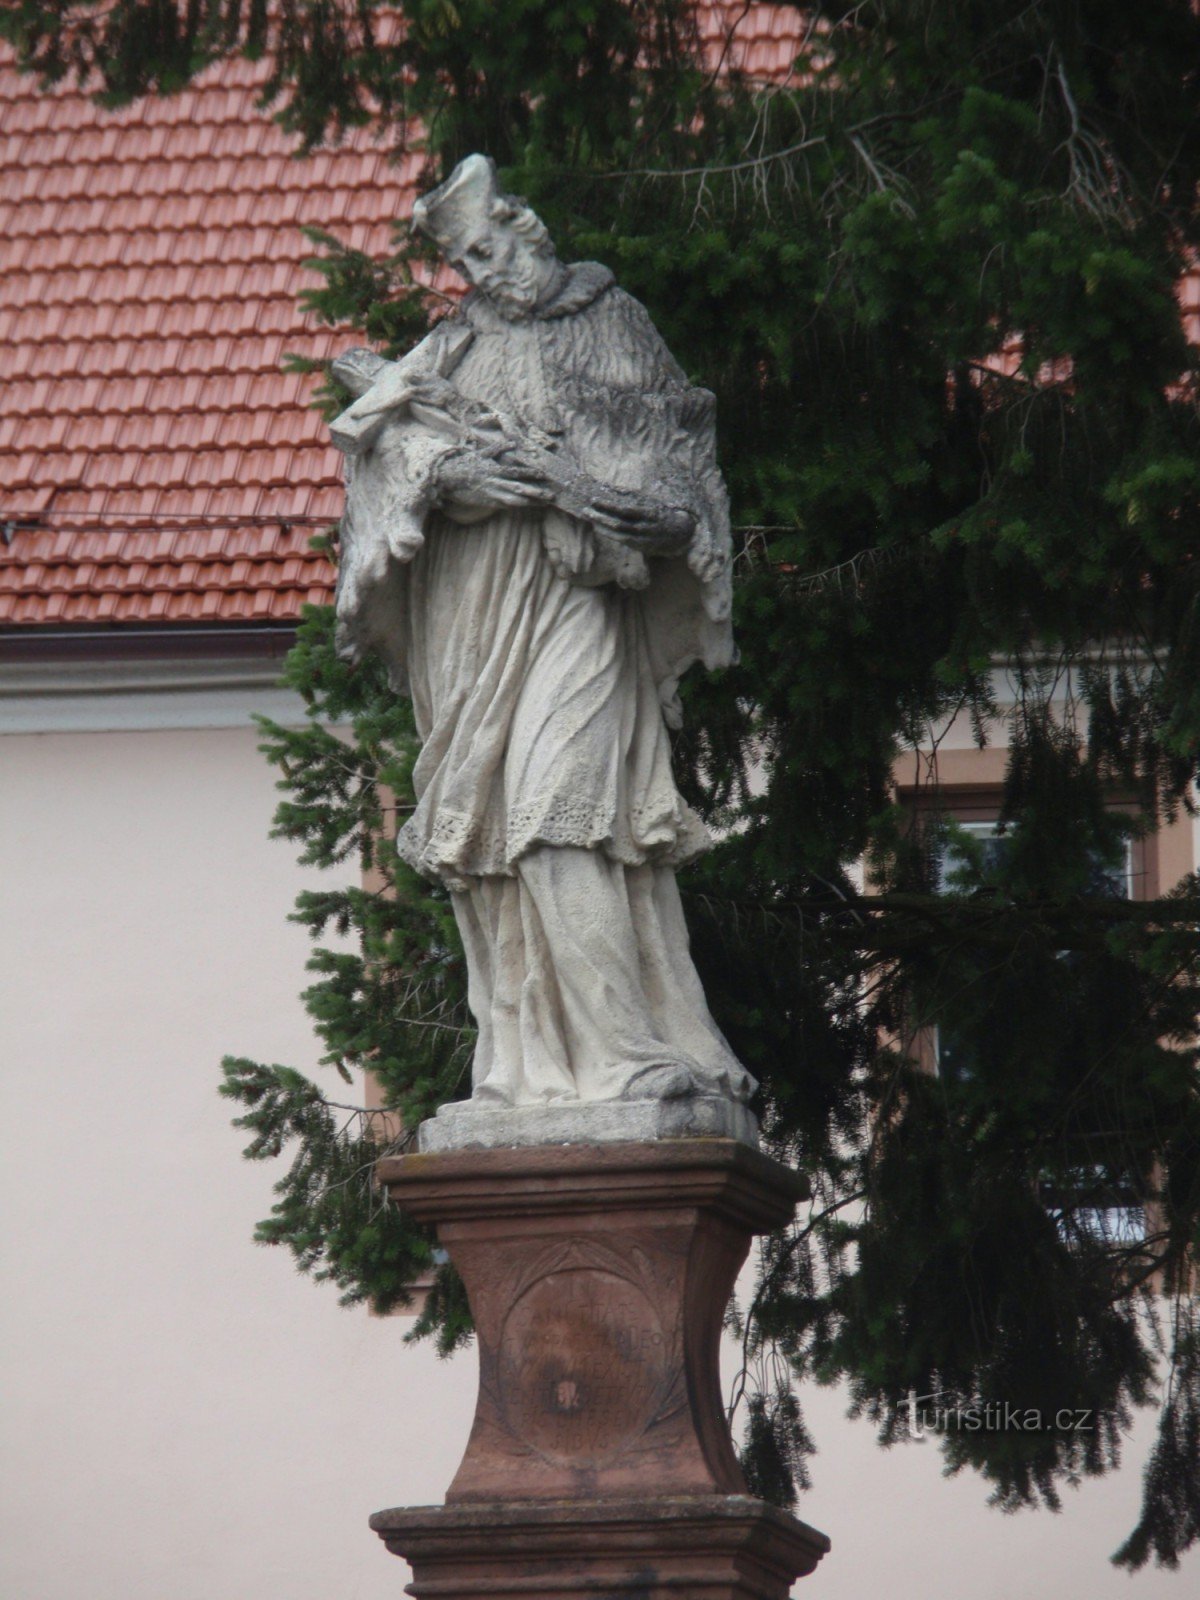 Statue of St. Jan Nepomucký in Velká Bíteš